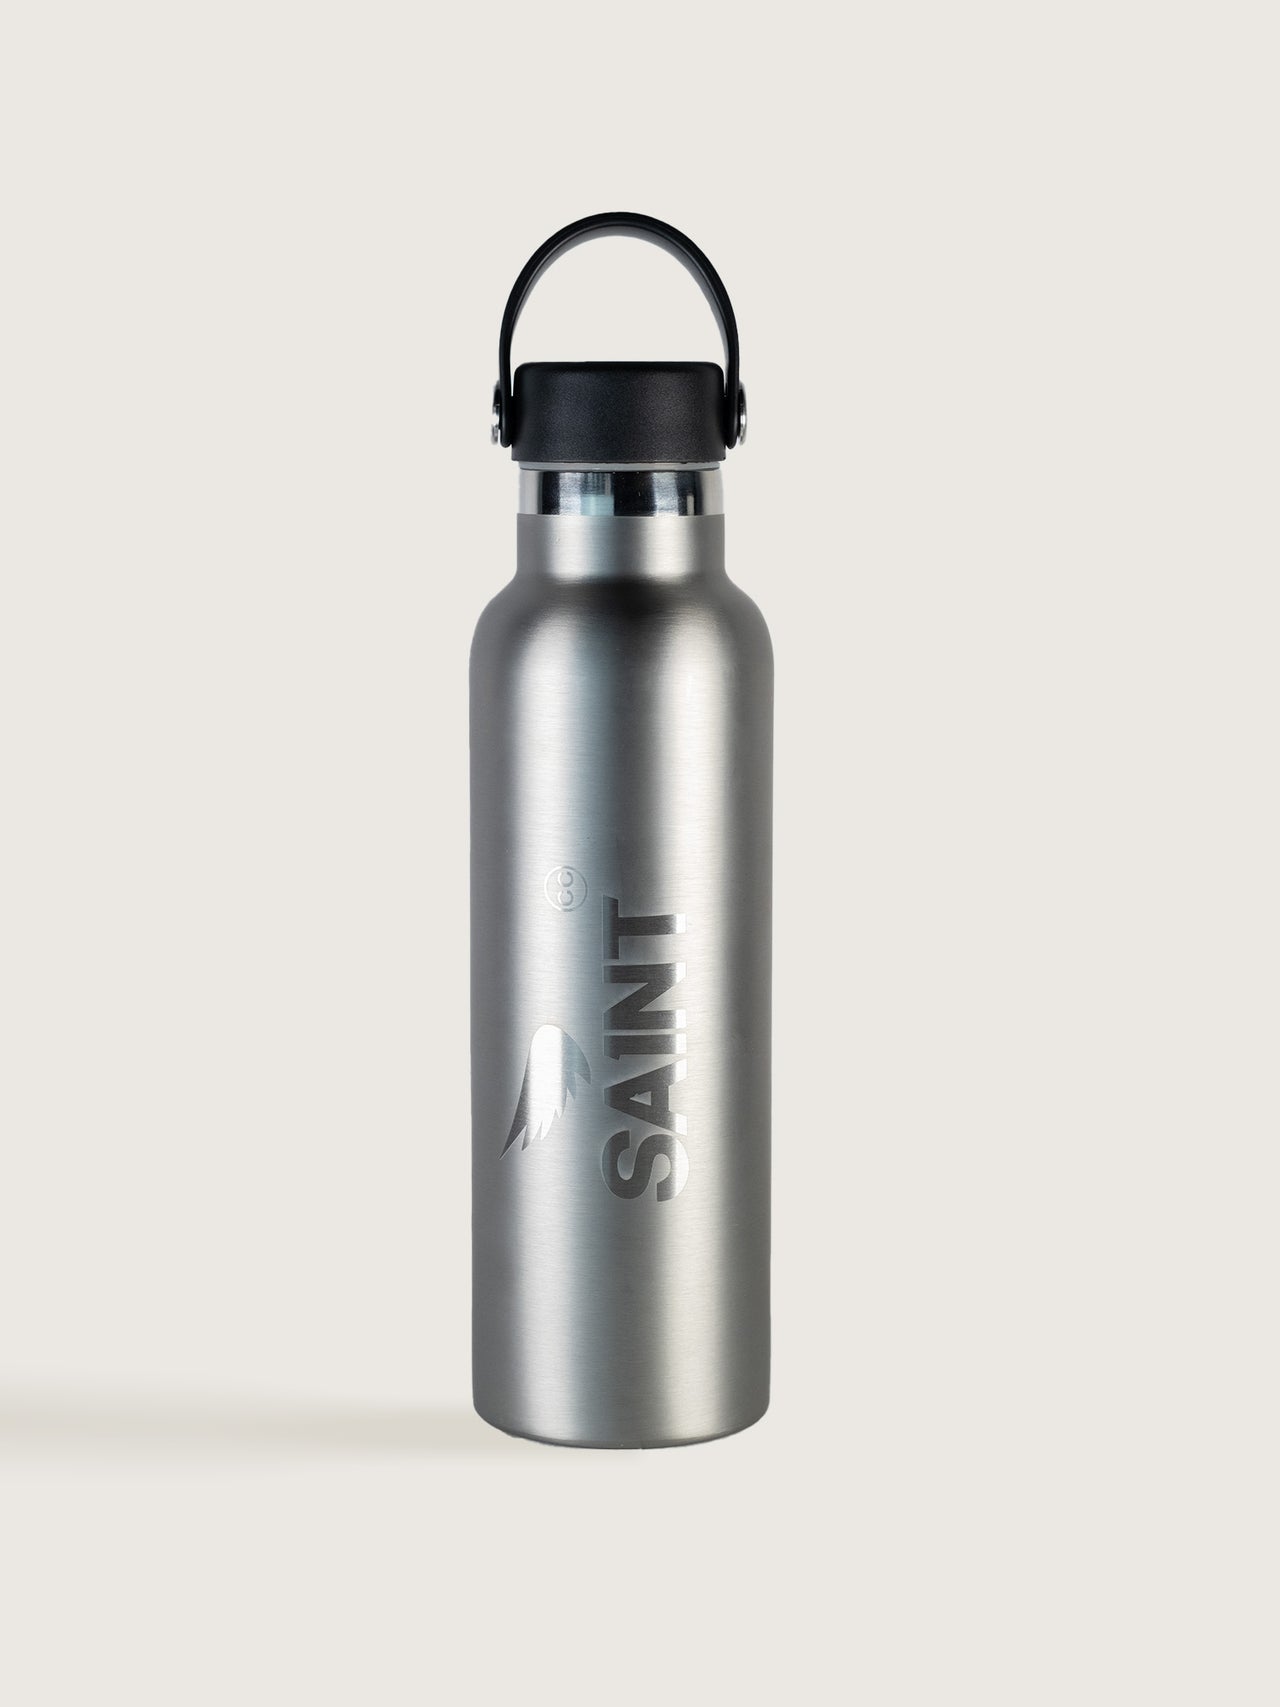 SA1NT 不锈钢瓶 - 750ml - 银色